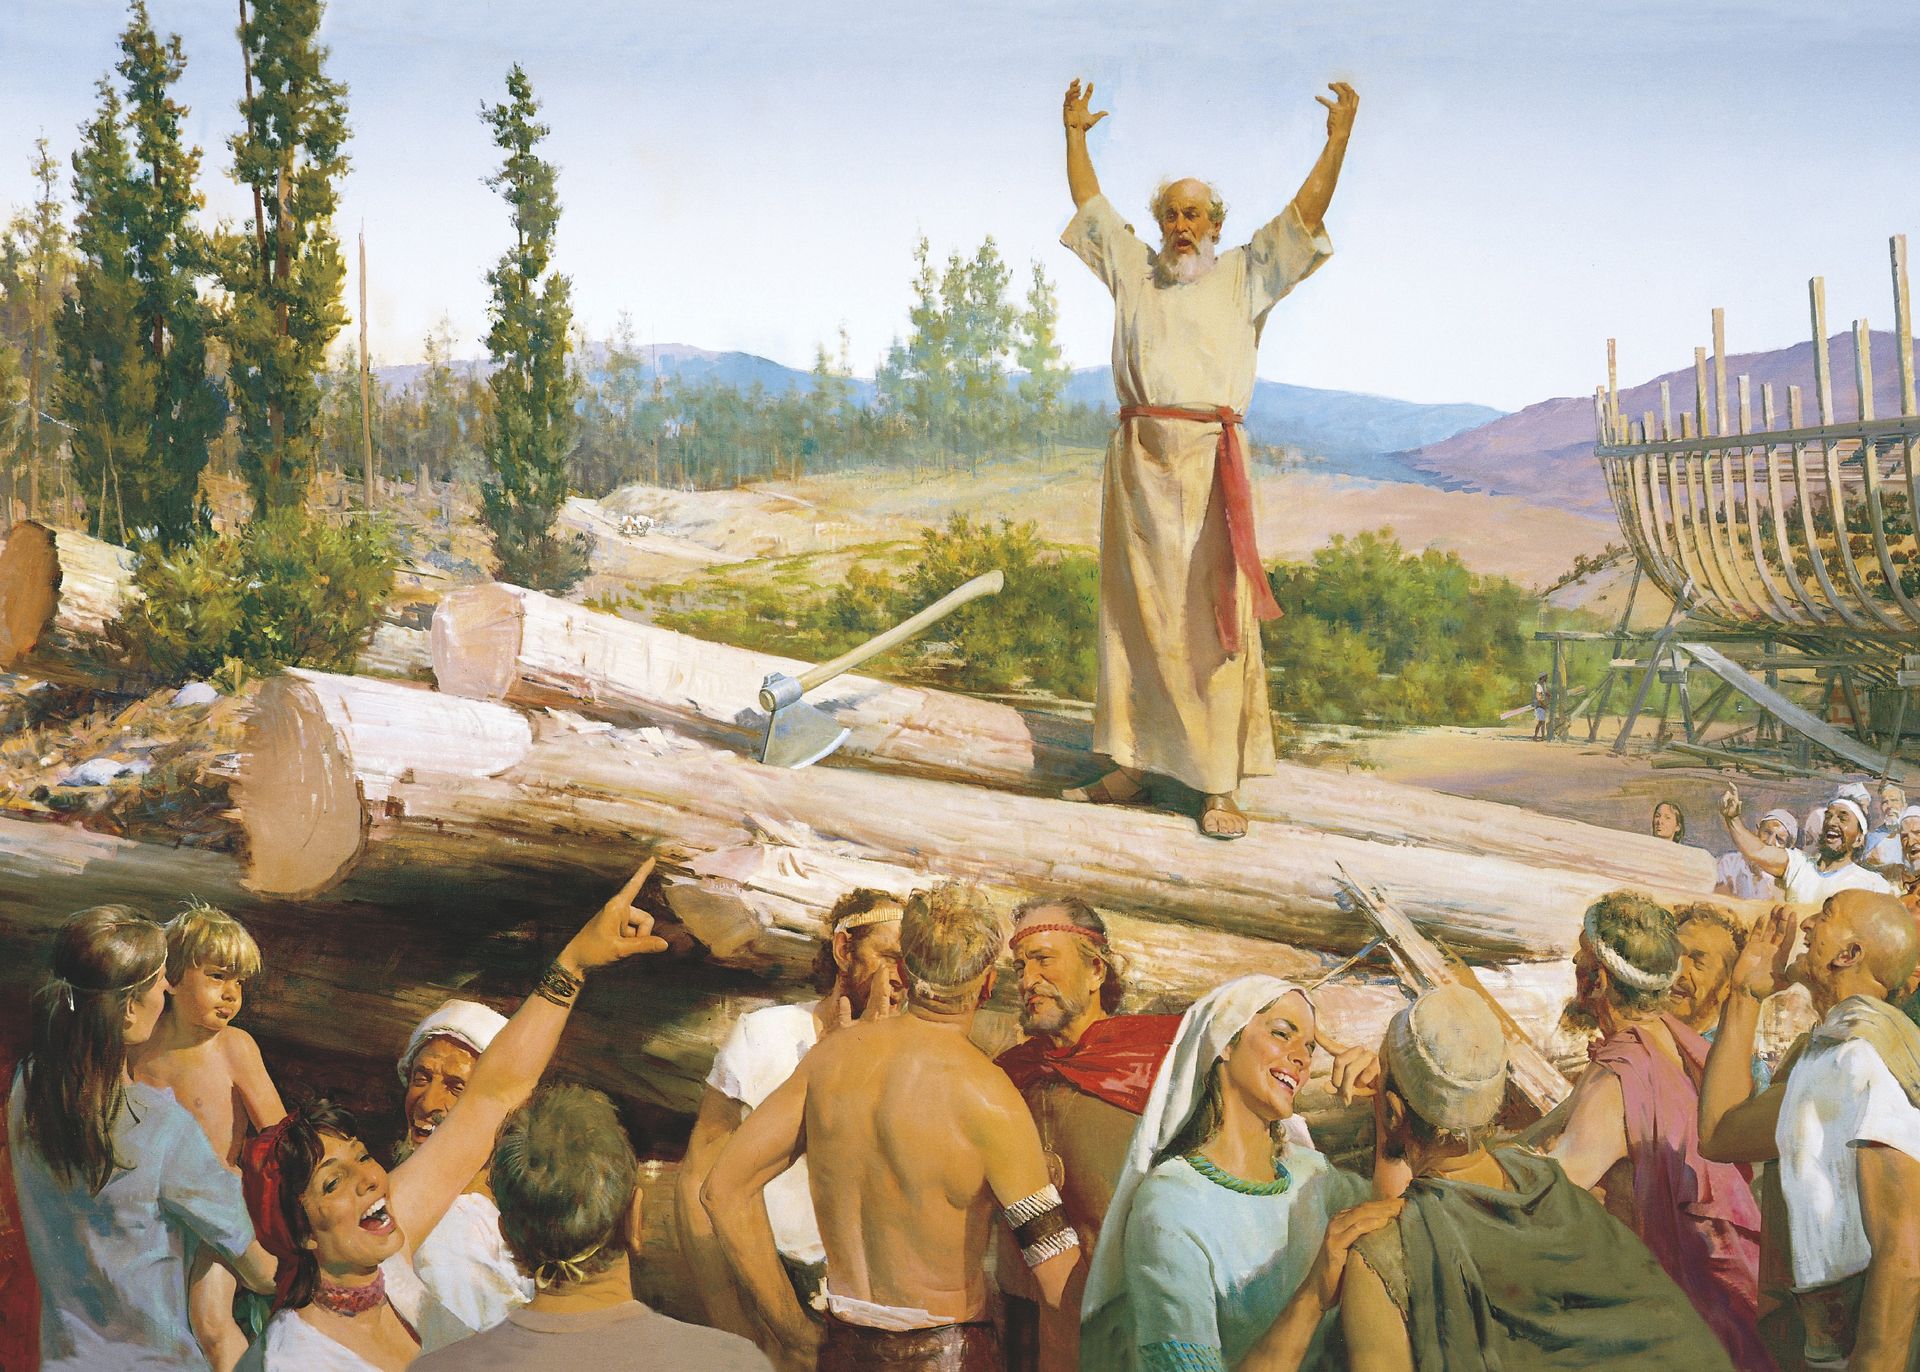 Bygging av arken (Noahs forkynnelse ble latterliggjort)